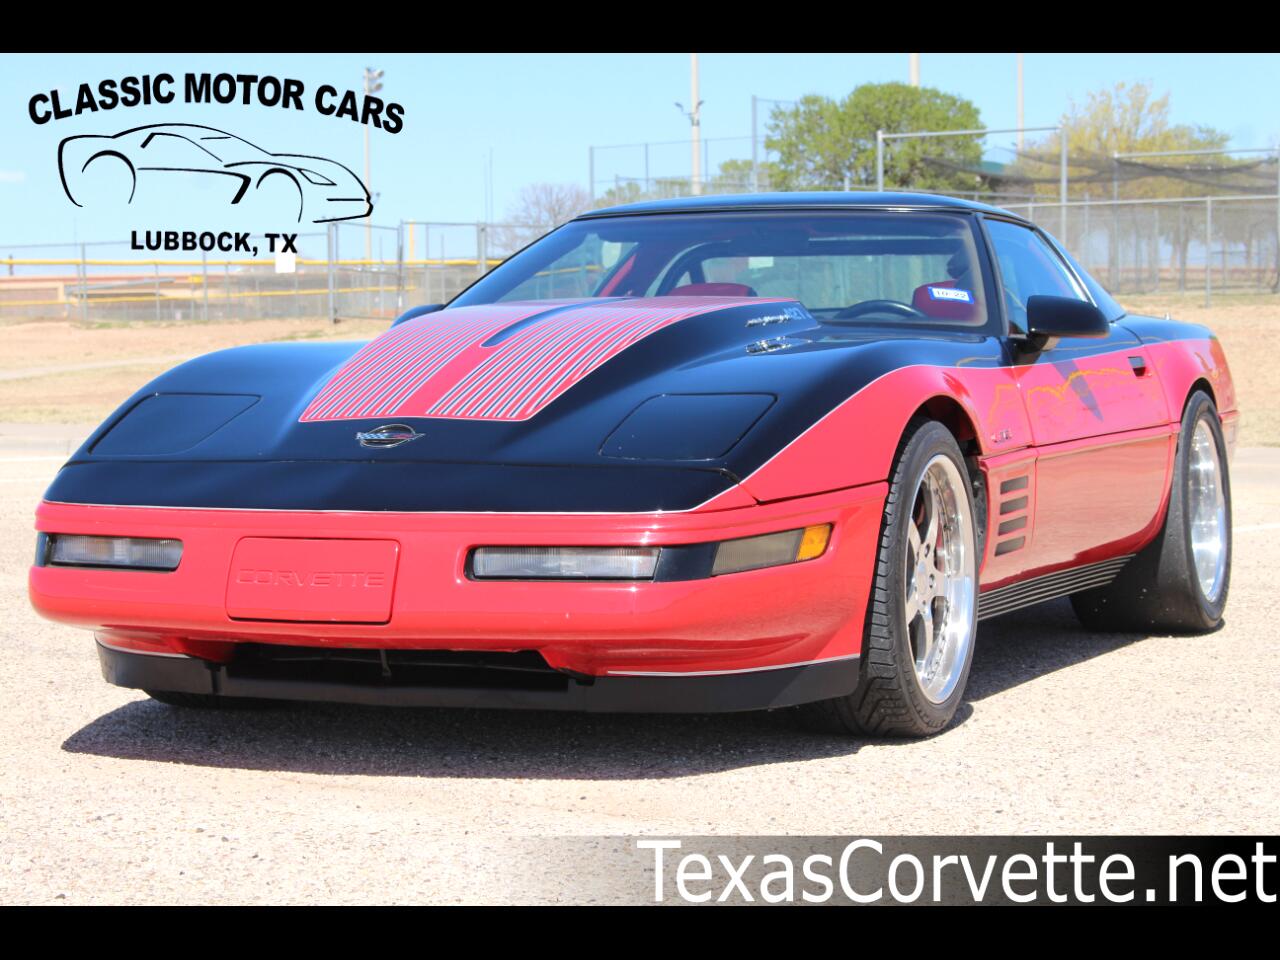 1991 Chevrolet Corvette ZR1 427 LT5 675HP 1000 miles on engine